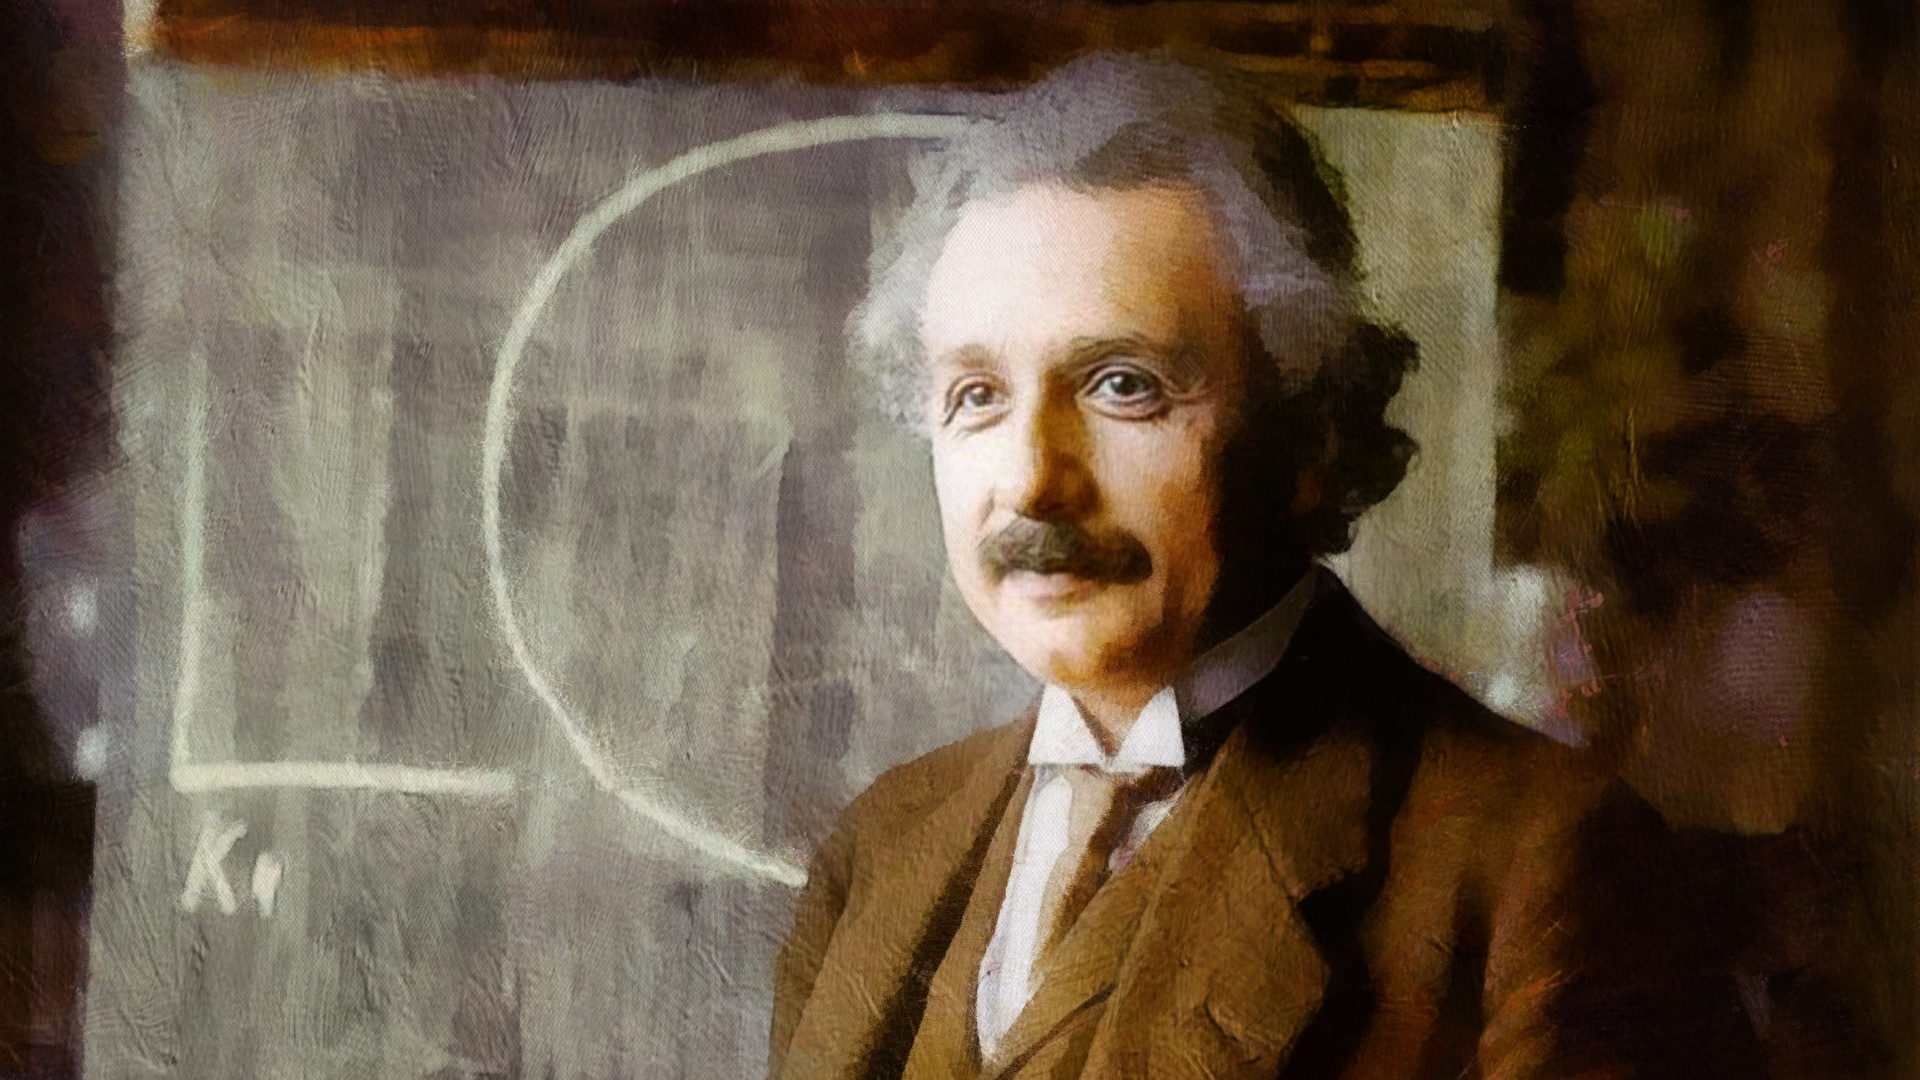 壁紙 19x1080 男性 描かれた壁紙 アルベルト アインシュタイン 有名人 ダウンロード 写真